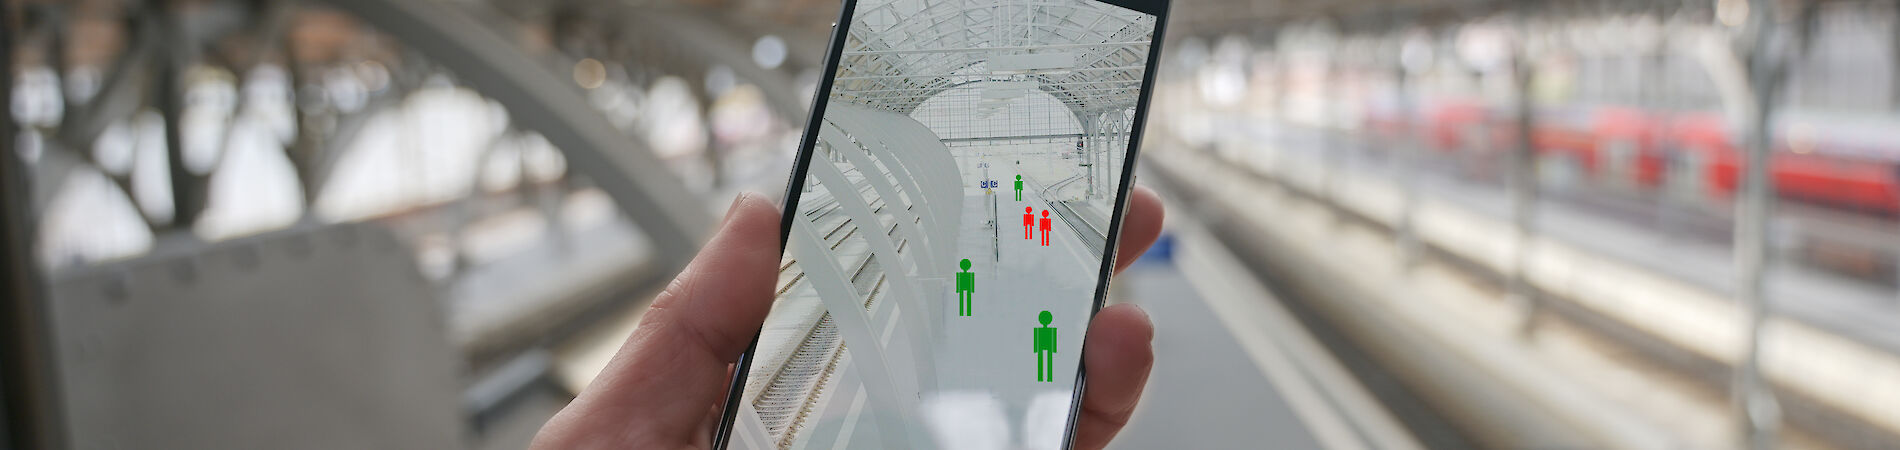 Hand hält Smartphone, auf dem Display sind grün und rot eingefärbte Grafiken von Personen zu sehen. Im Hintergrund verschwommen ein Bahnhof.